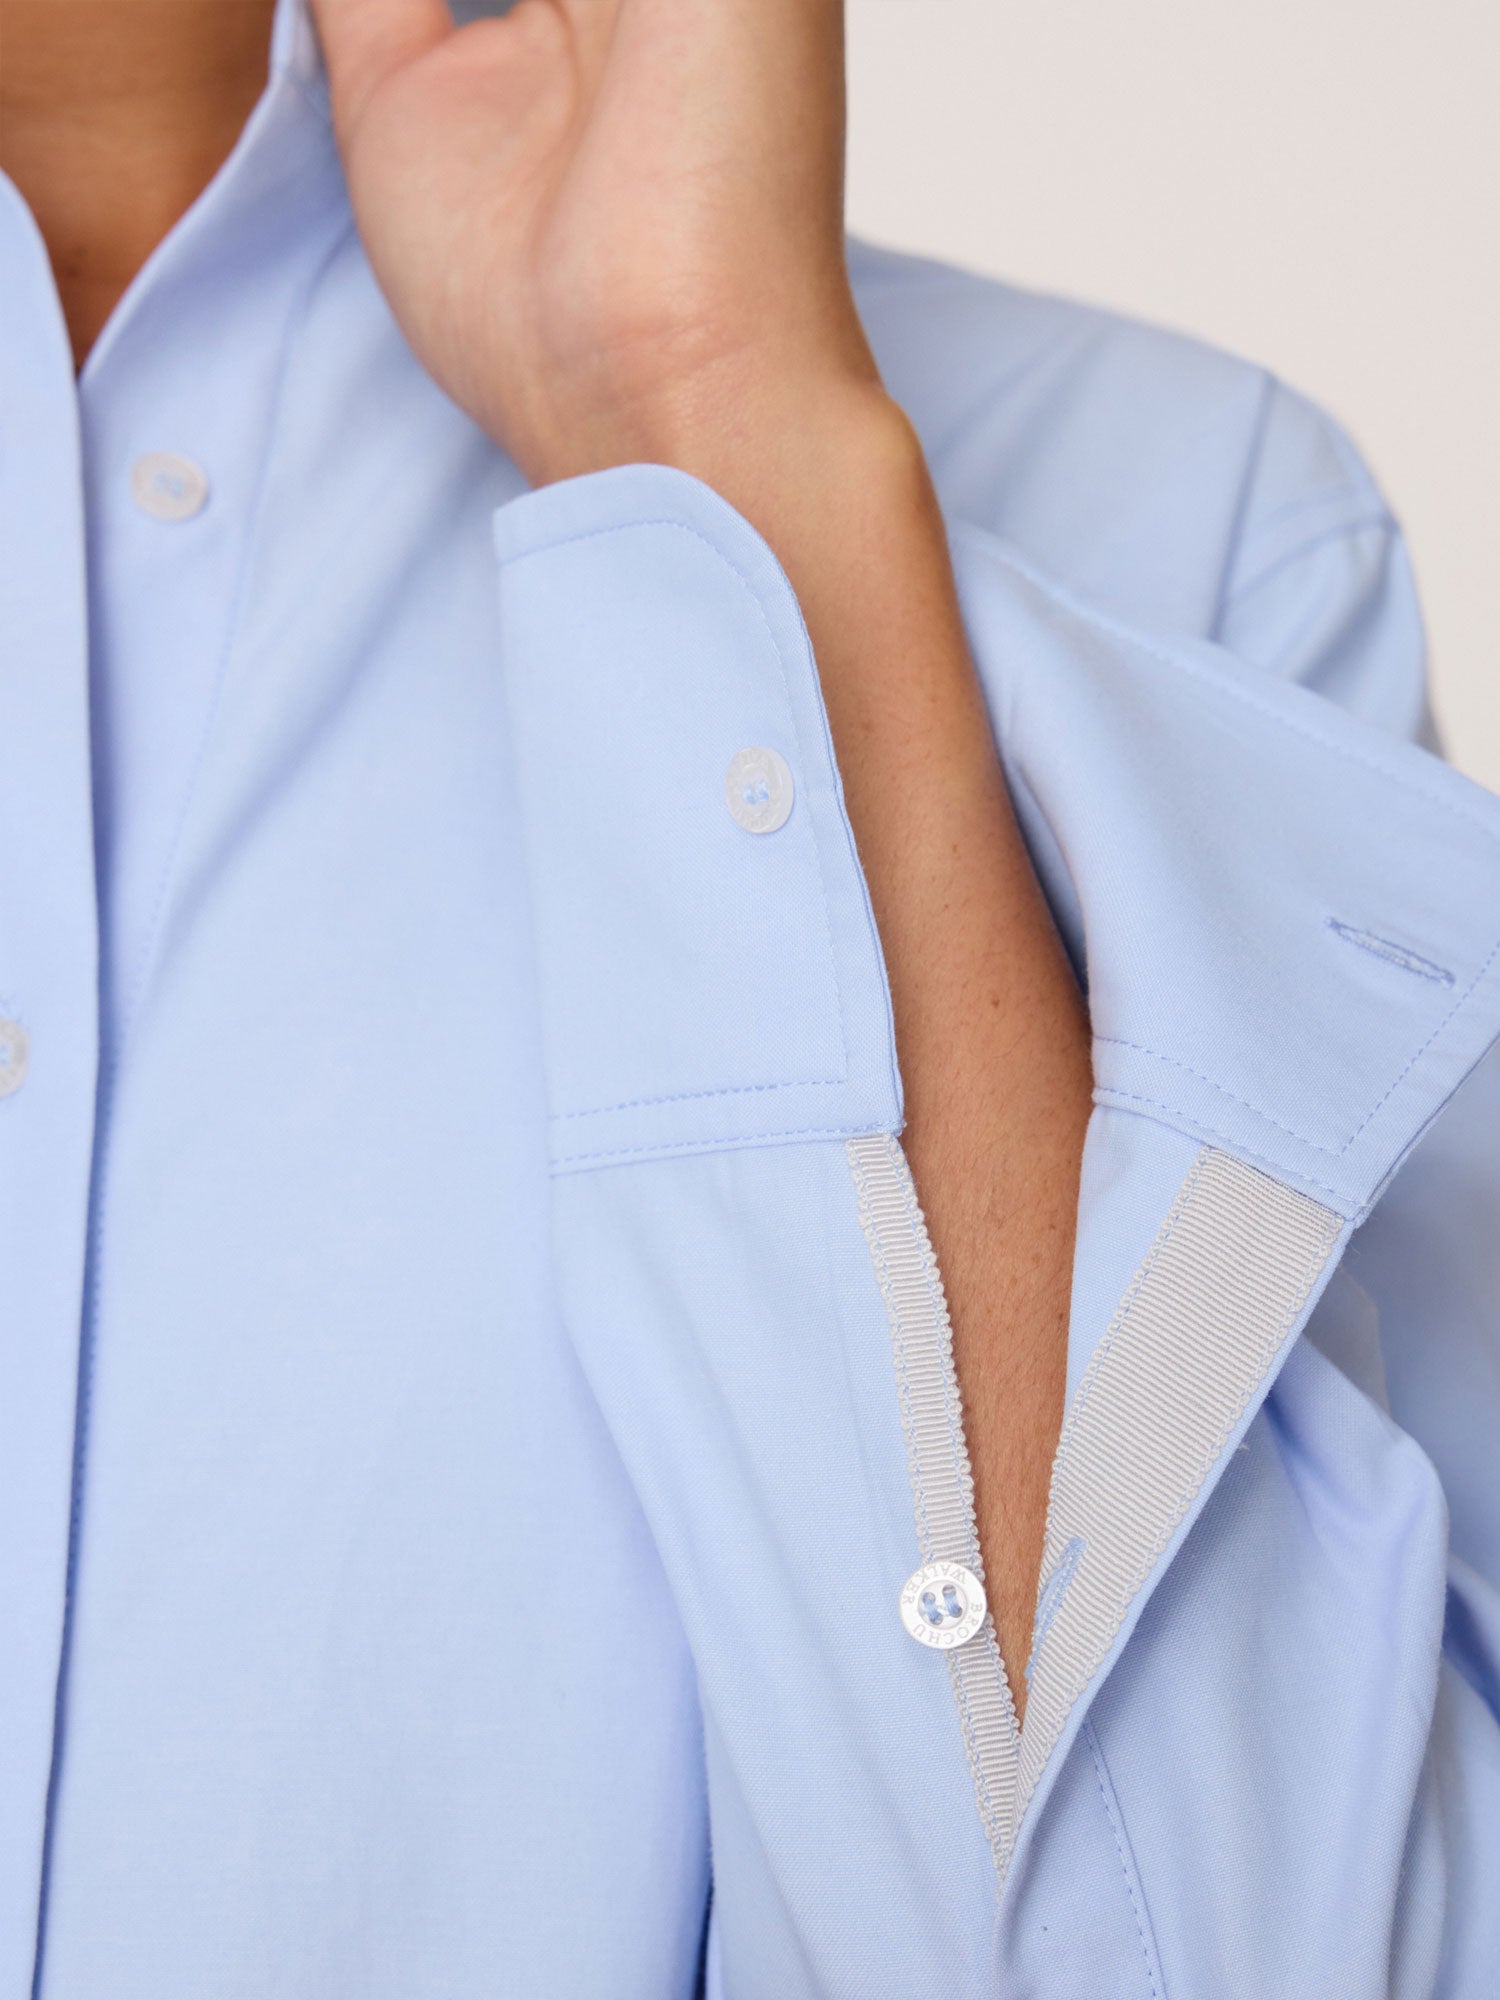 Lark button up light blue shirt close up